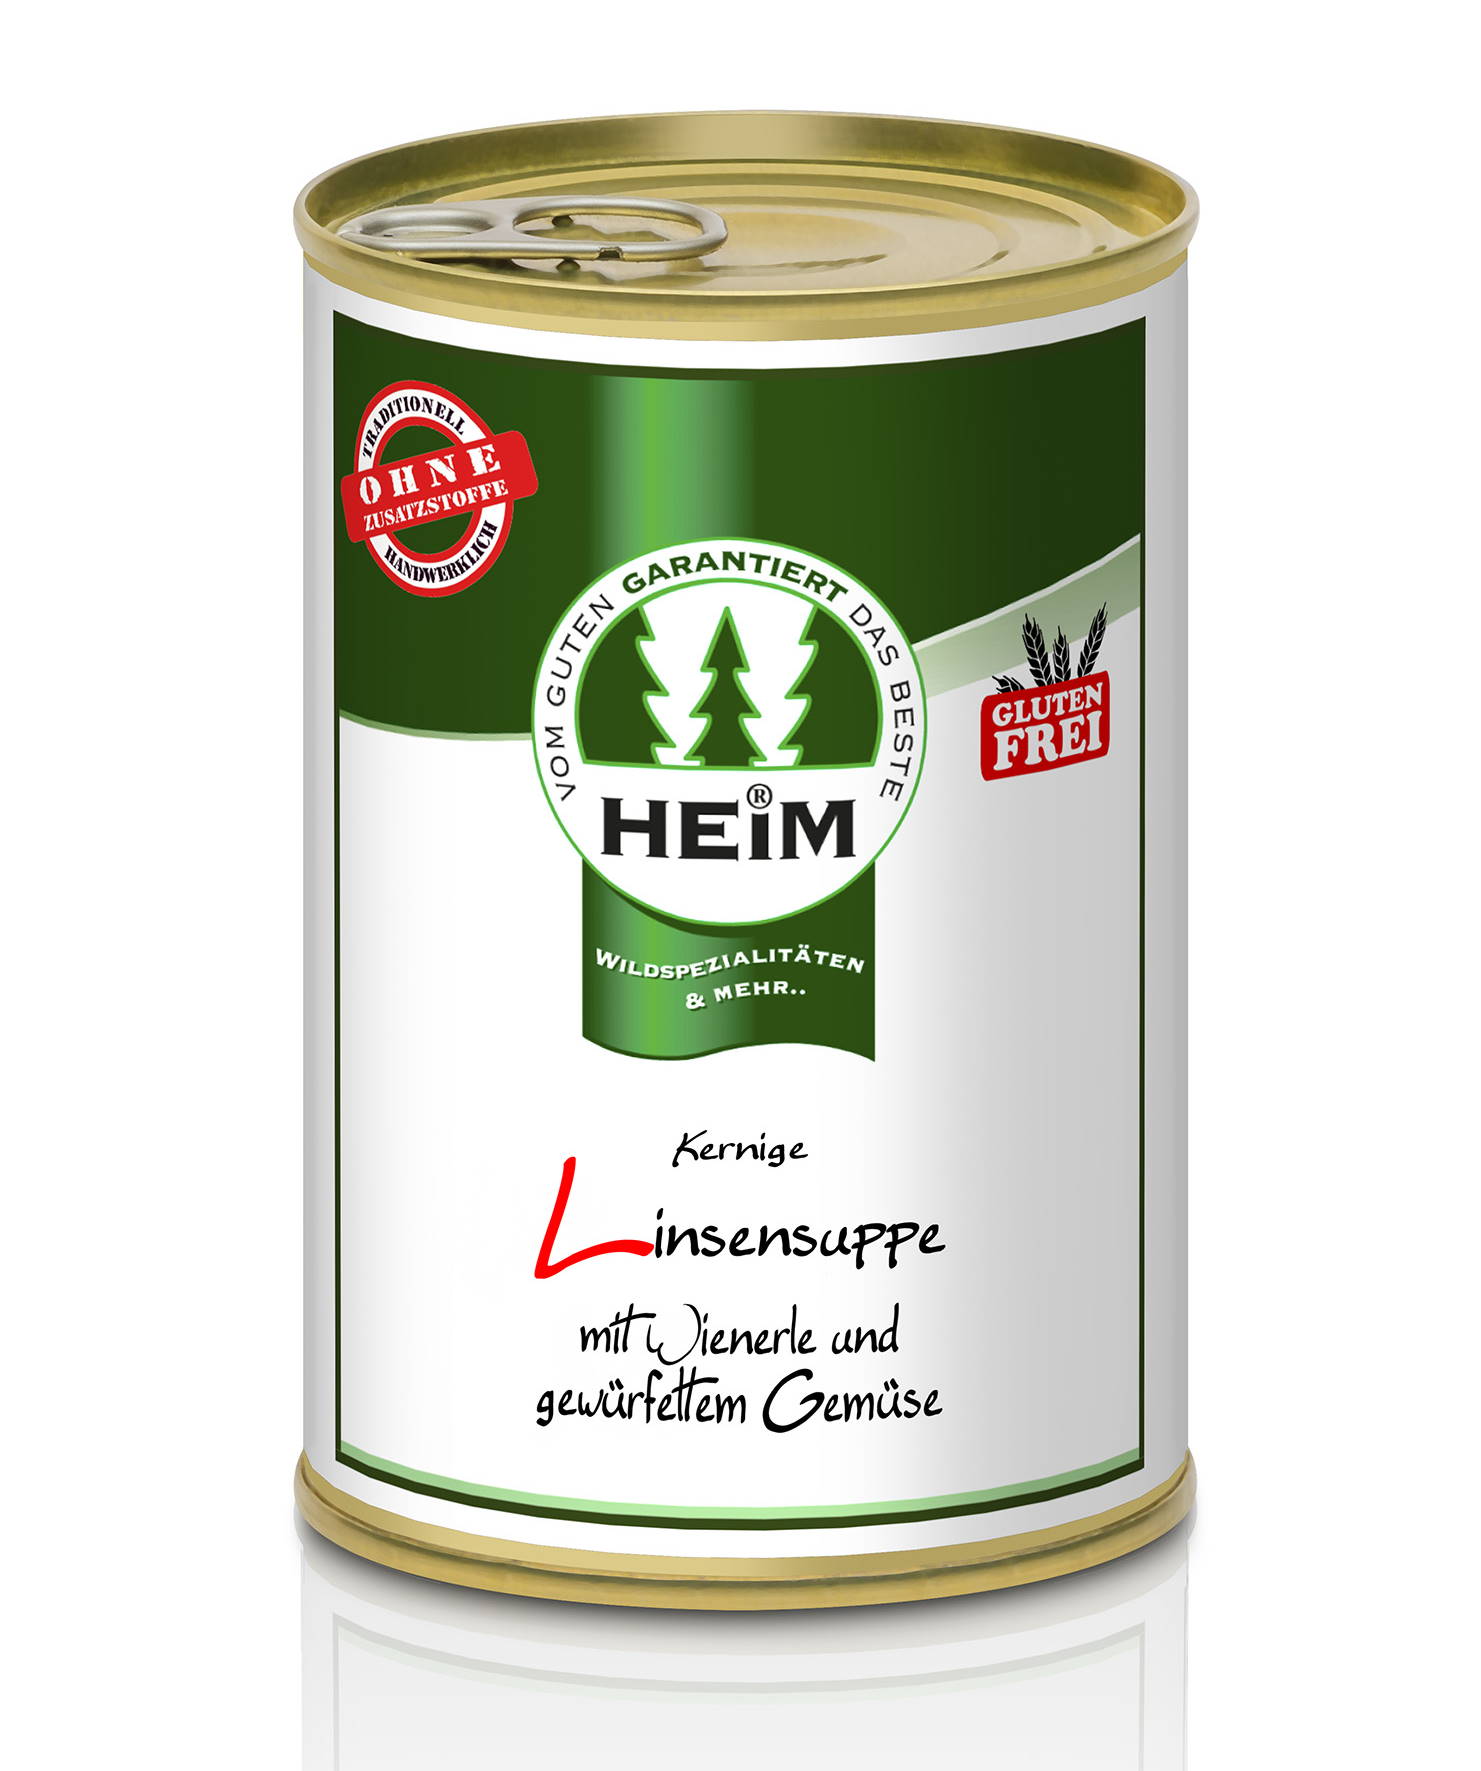 Kernige Linsensuppe mit Wienerle und gewürfeltem Gemüse (glutenfrei), HEIM 0,4 l